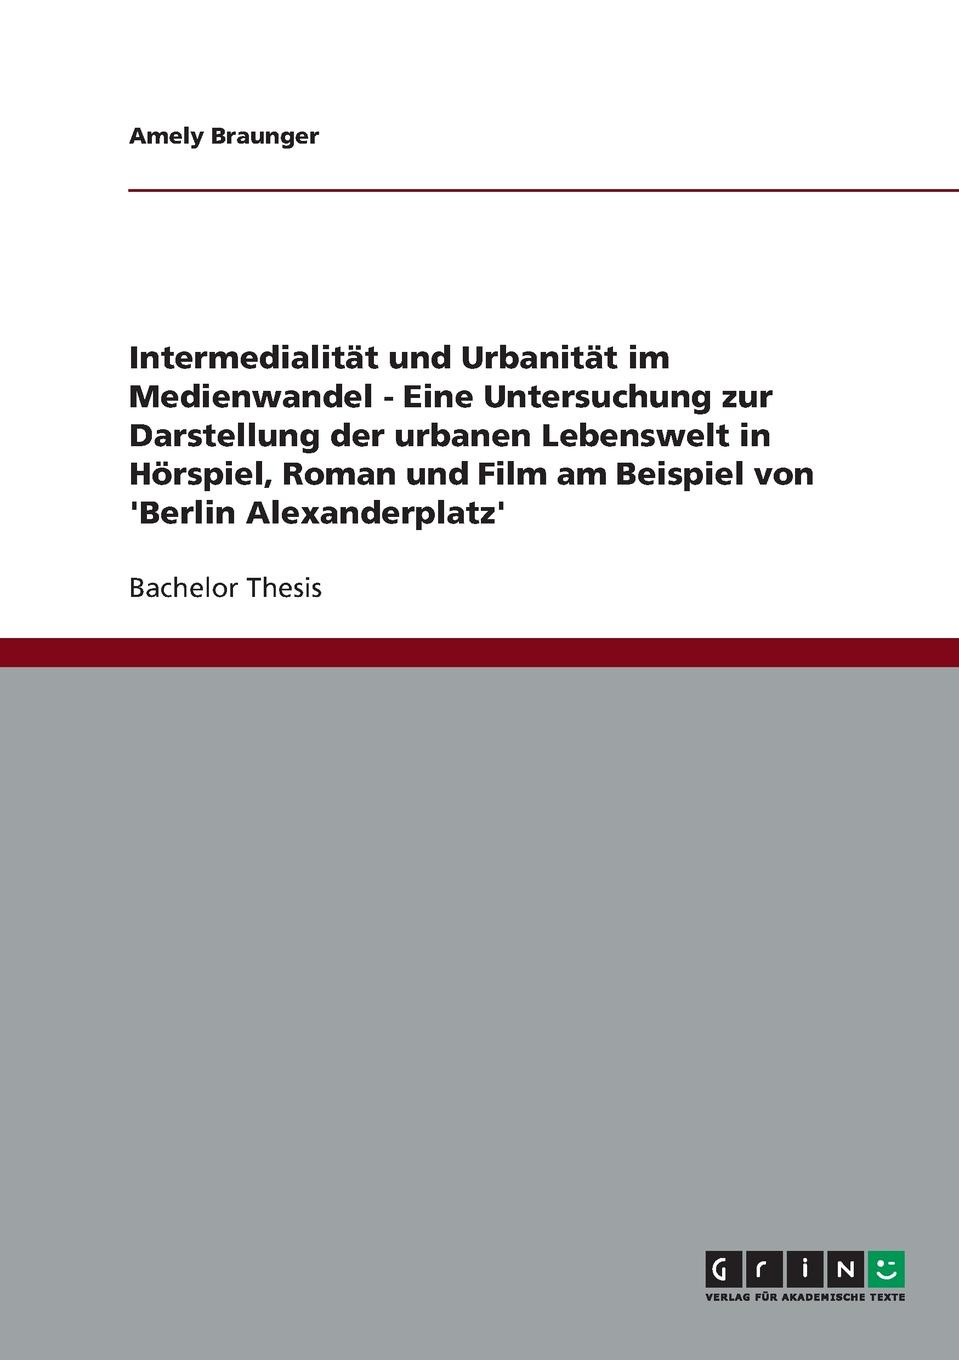 фото Intermedialitat und Urbanitat im Medienwandel. Die urbane Lebenswelt in Horspiel, Roman und Film am Beispiel von .Berlin Alexanderplatz.